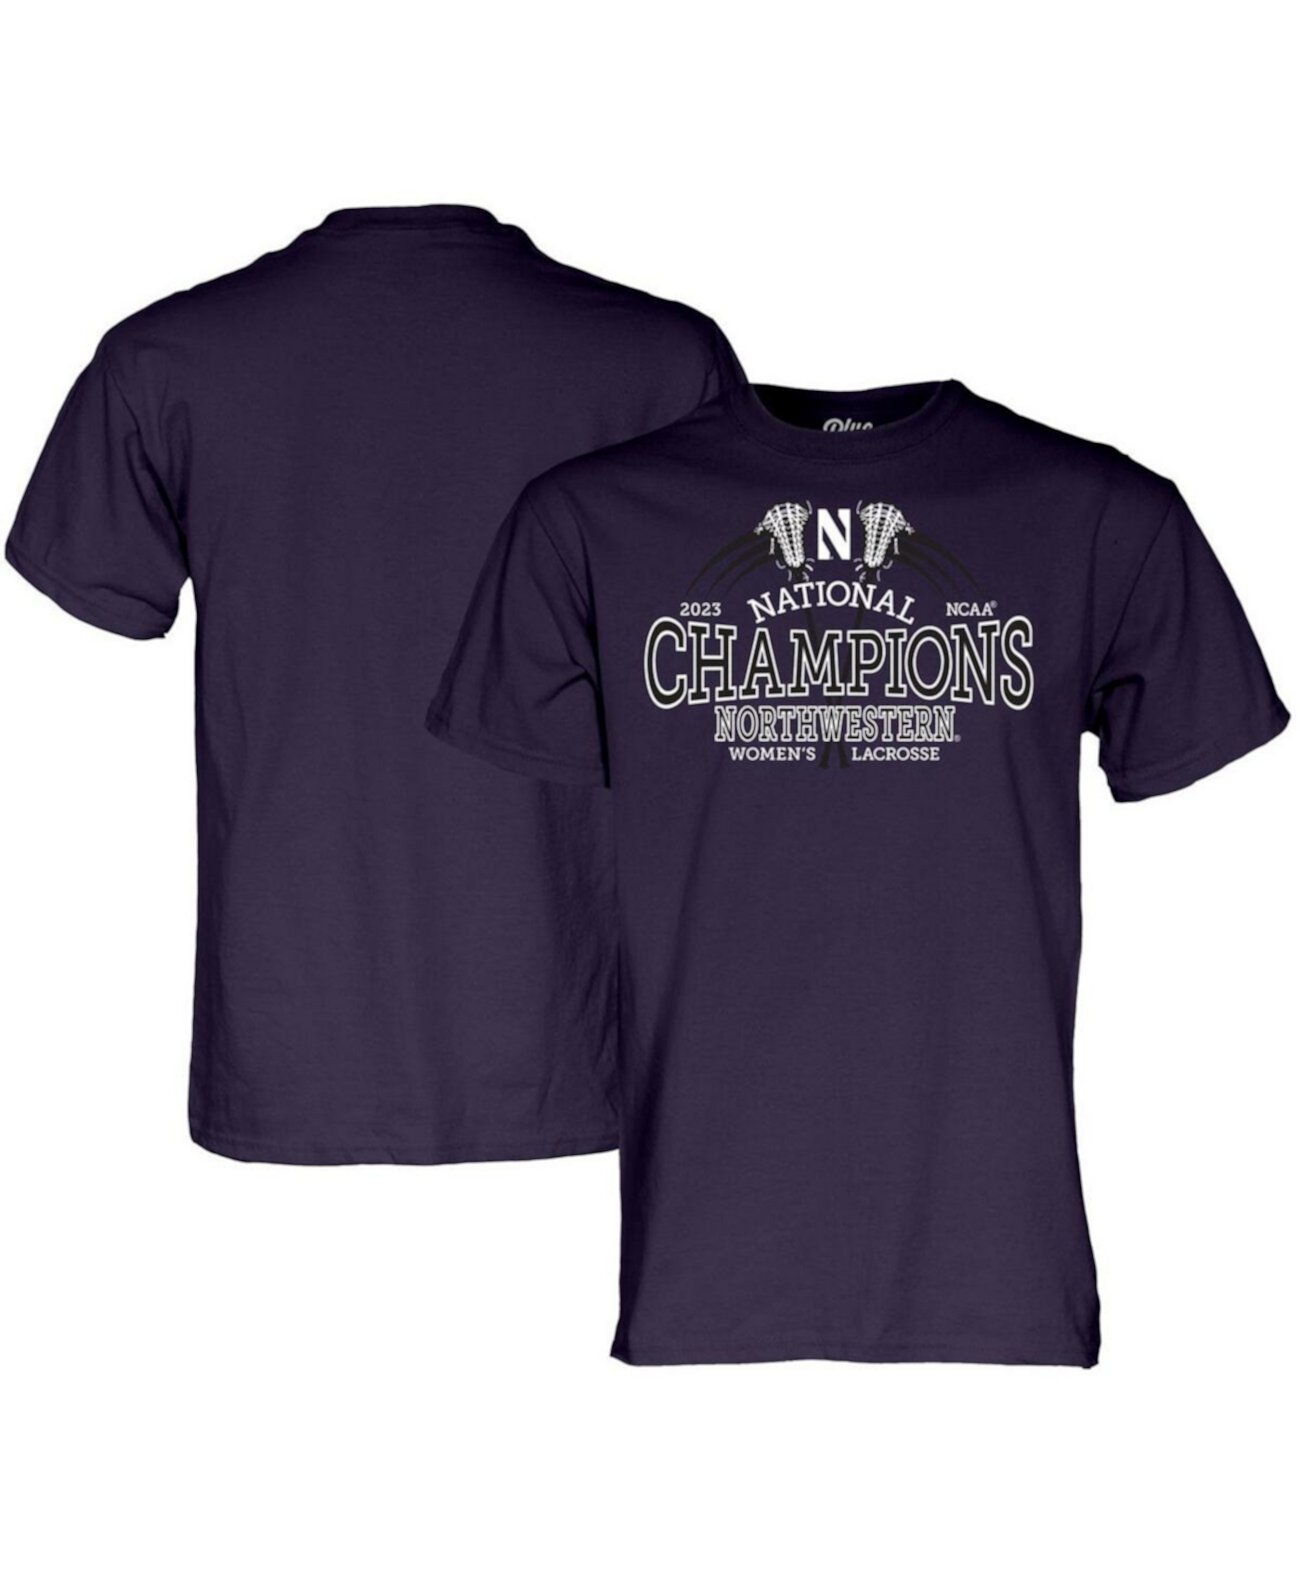 Фиолетовая футболка Northwestern Wildcats 2023, женская футболка национальных чемпионов NCAA по лакроссу Blue 84